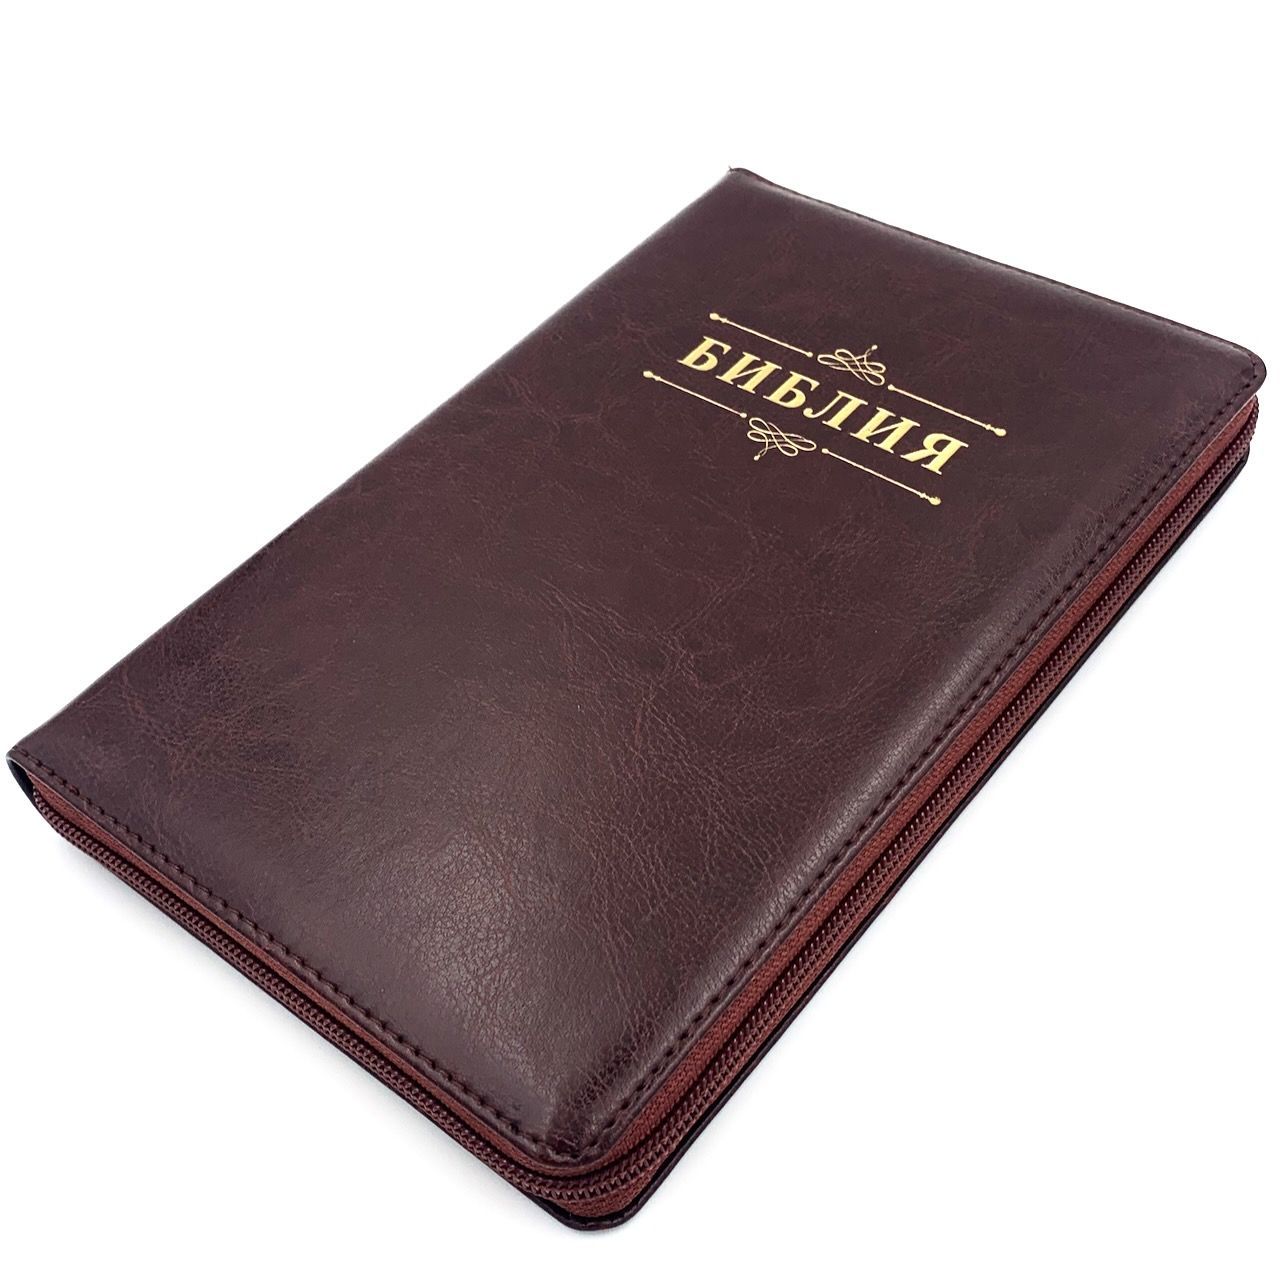 Библия 055z код 23055-6 надпись "Библия с вензелем", переплет из искусственной кожи на молнии, цвет темно-коричневый с оттенком бордо, средний формат, 143*220 мм